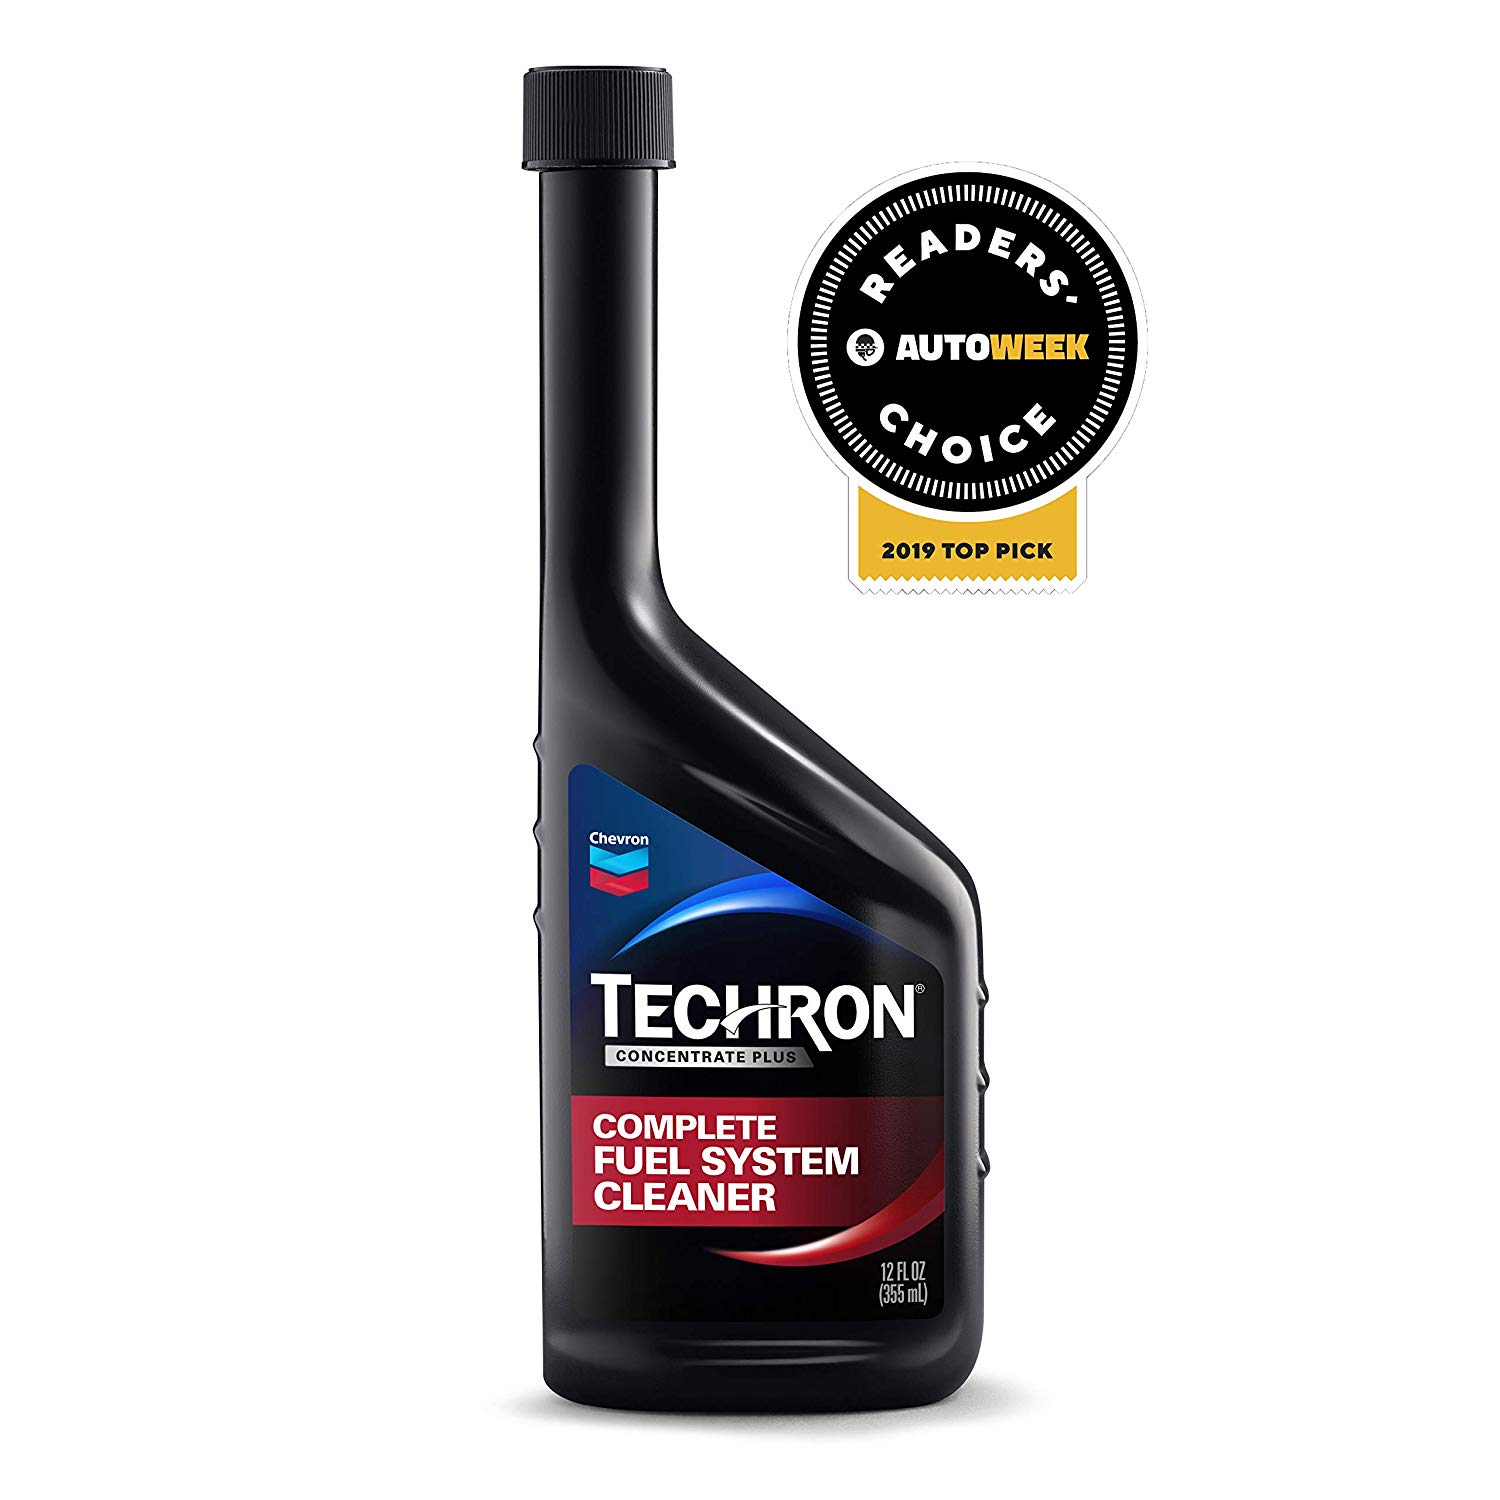 Chevron Techron Fuel Injector Cleaner Reviews Alittlefreak